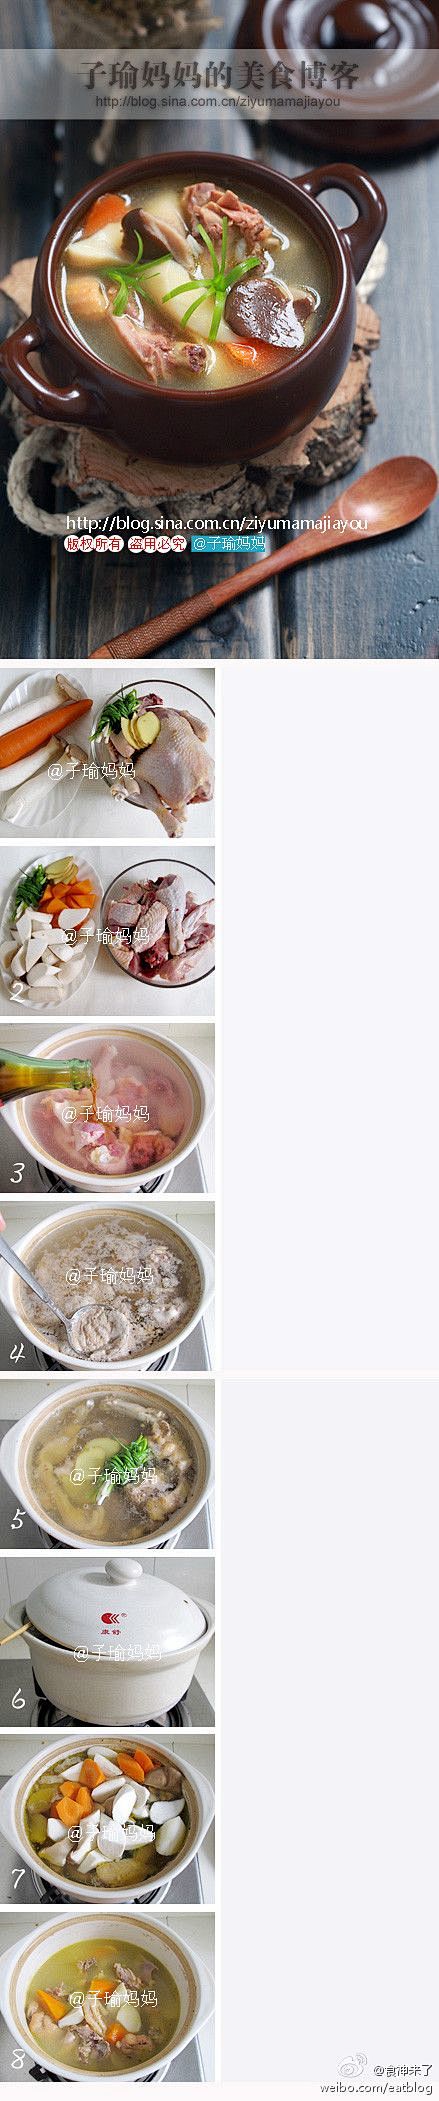 【如何炖出鲜美鸡汤？】#美食博客#1 鸡...